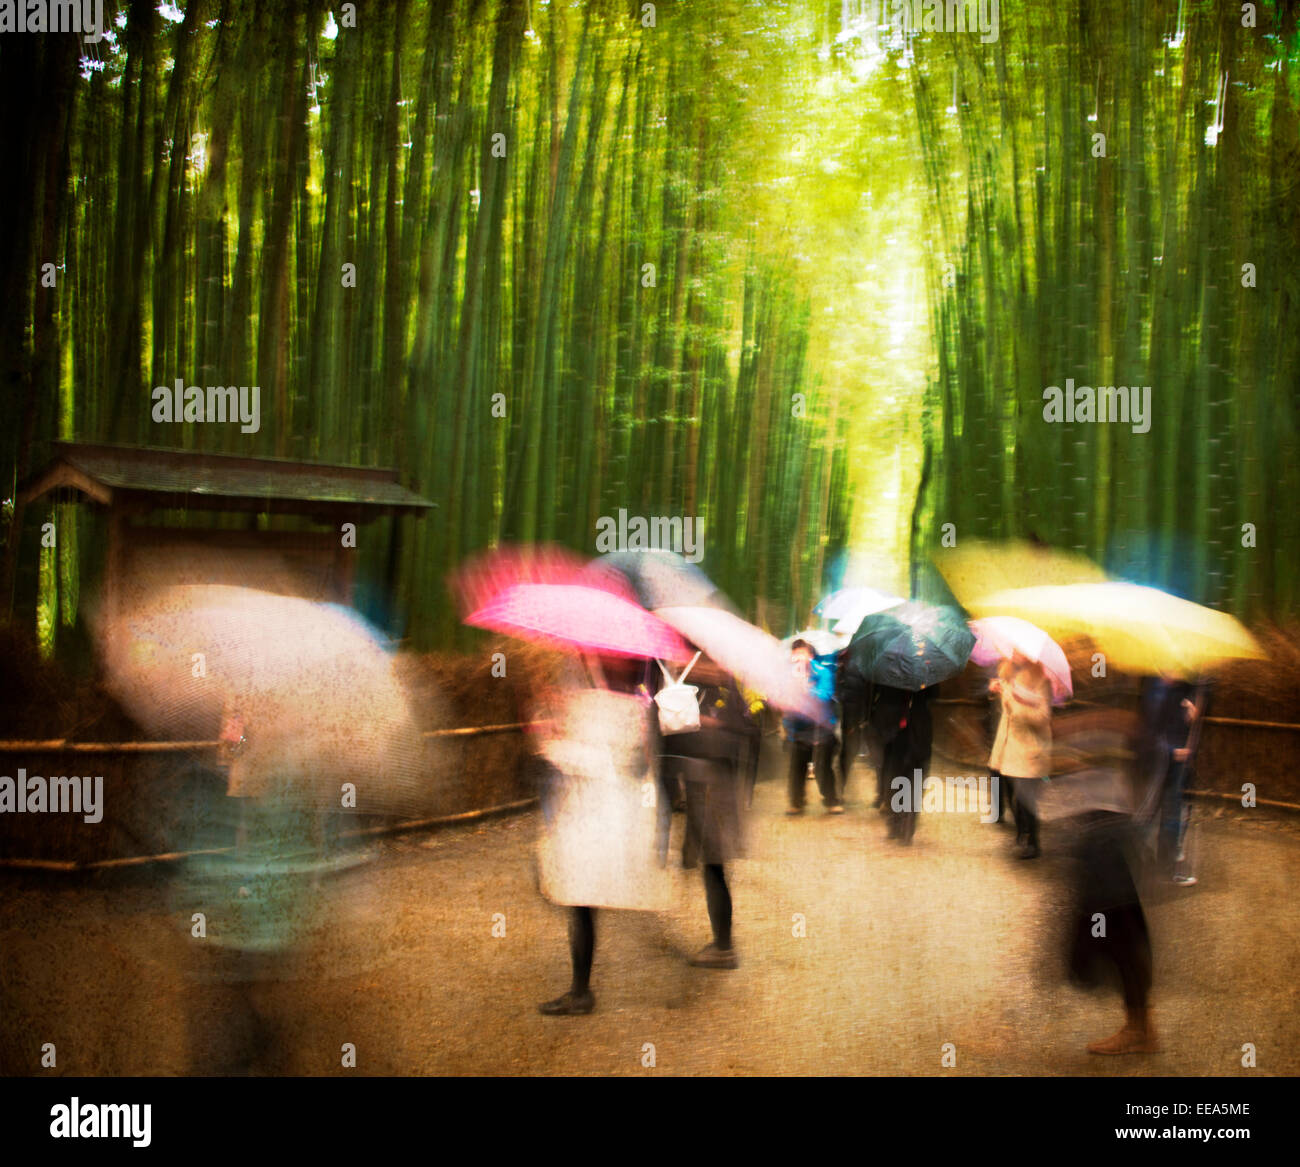 Künstlerischen Bild an einem verregneten Tag in Bambushainen der Arashiyama, Kyoto, Japan. Stockfoto